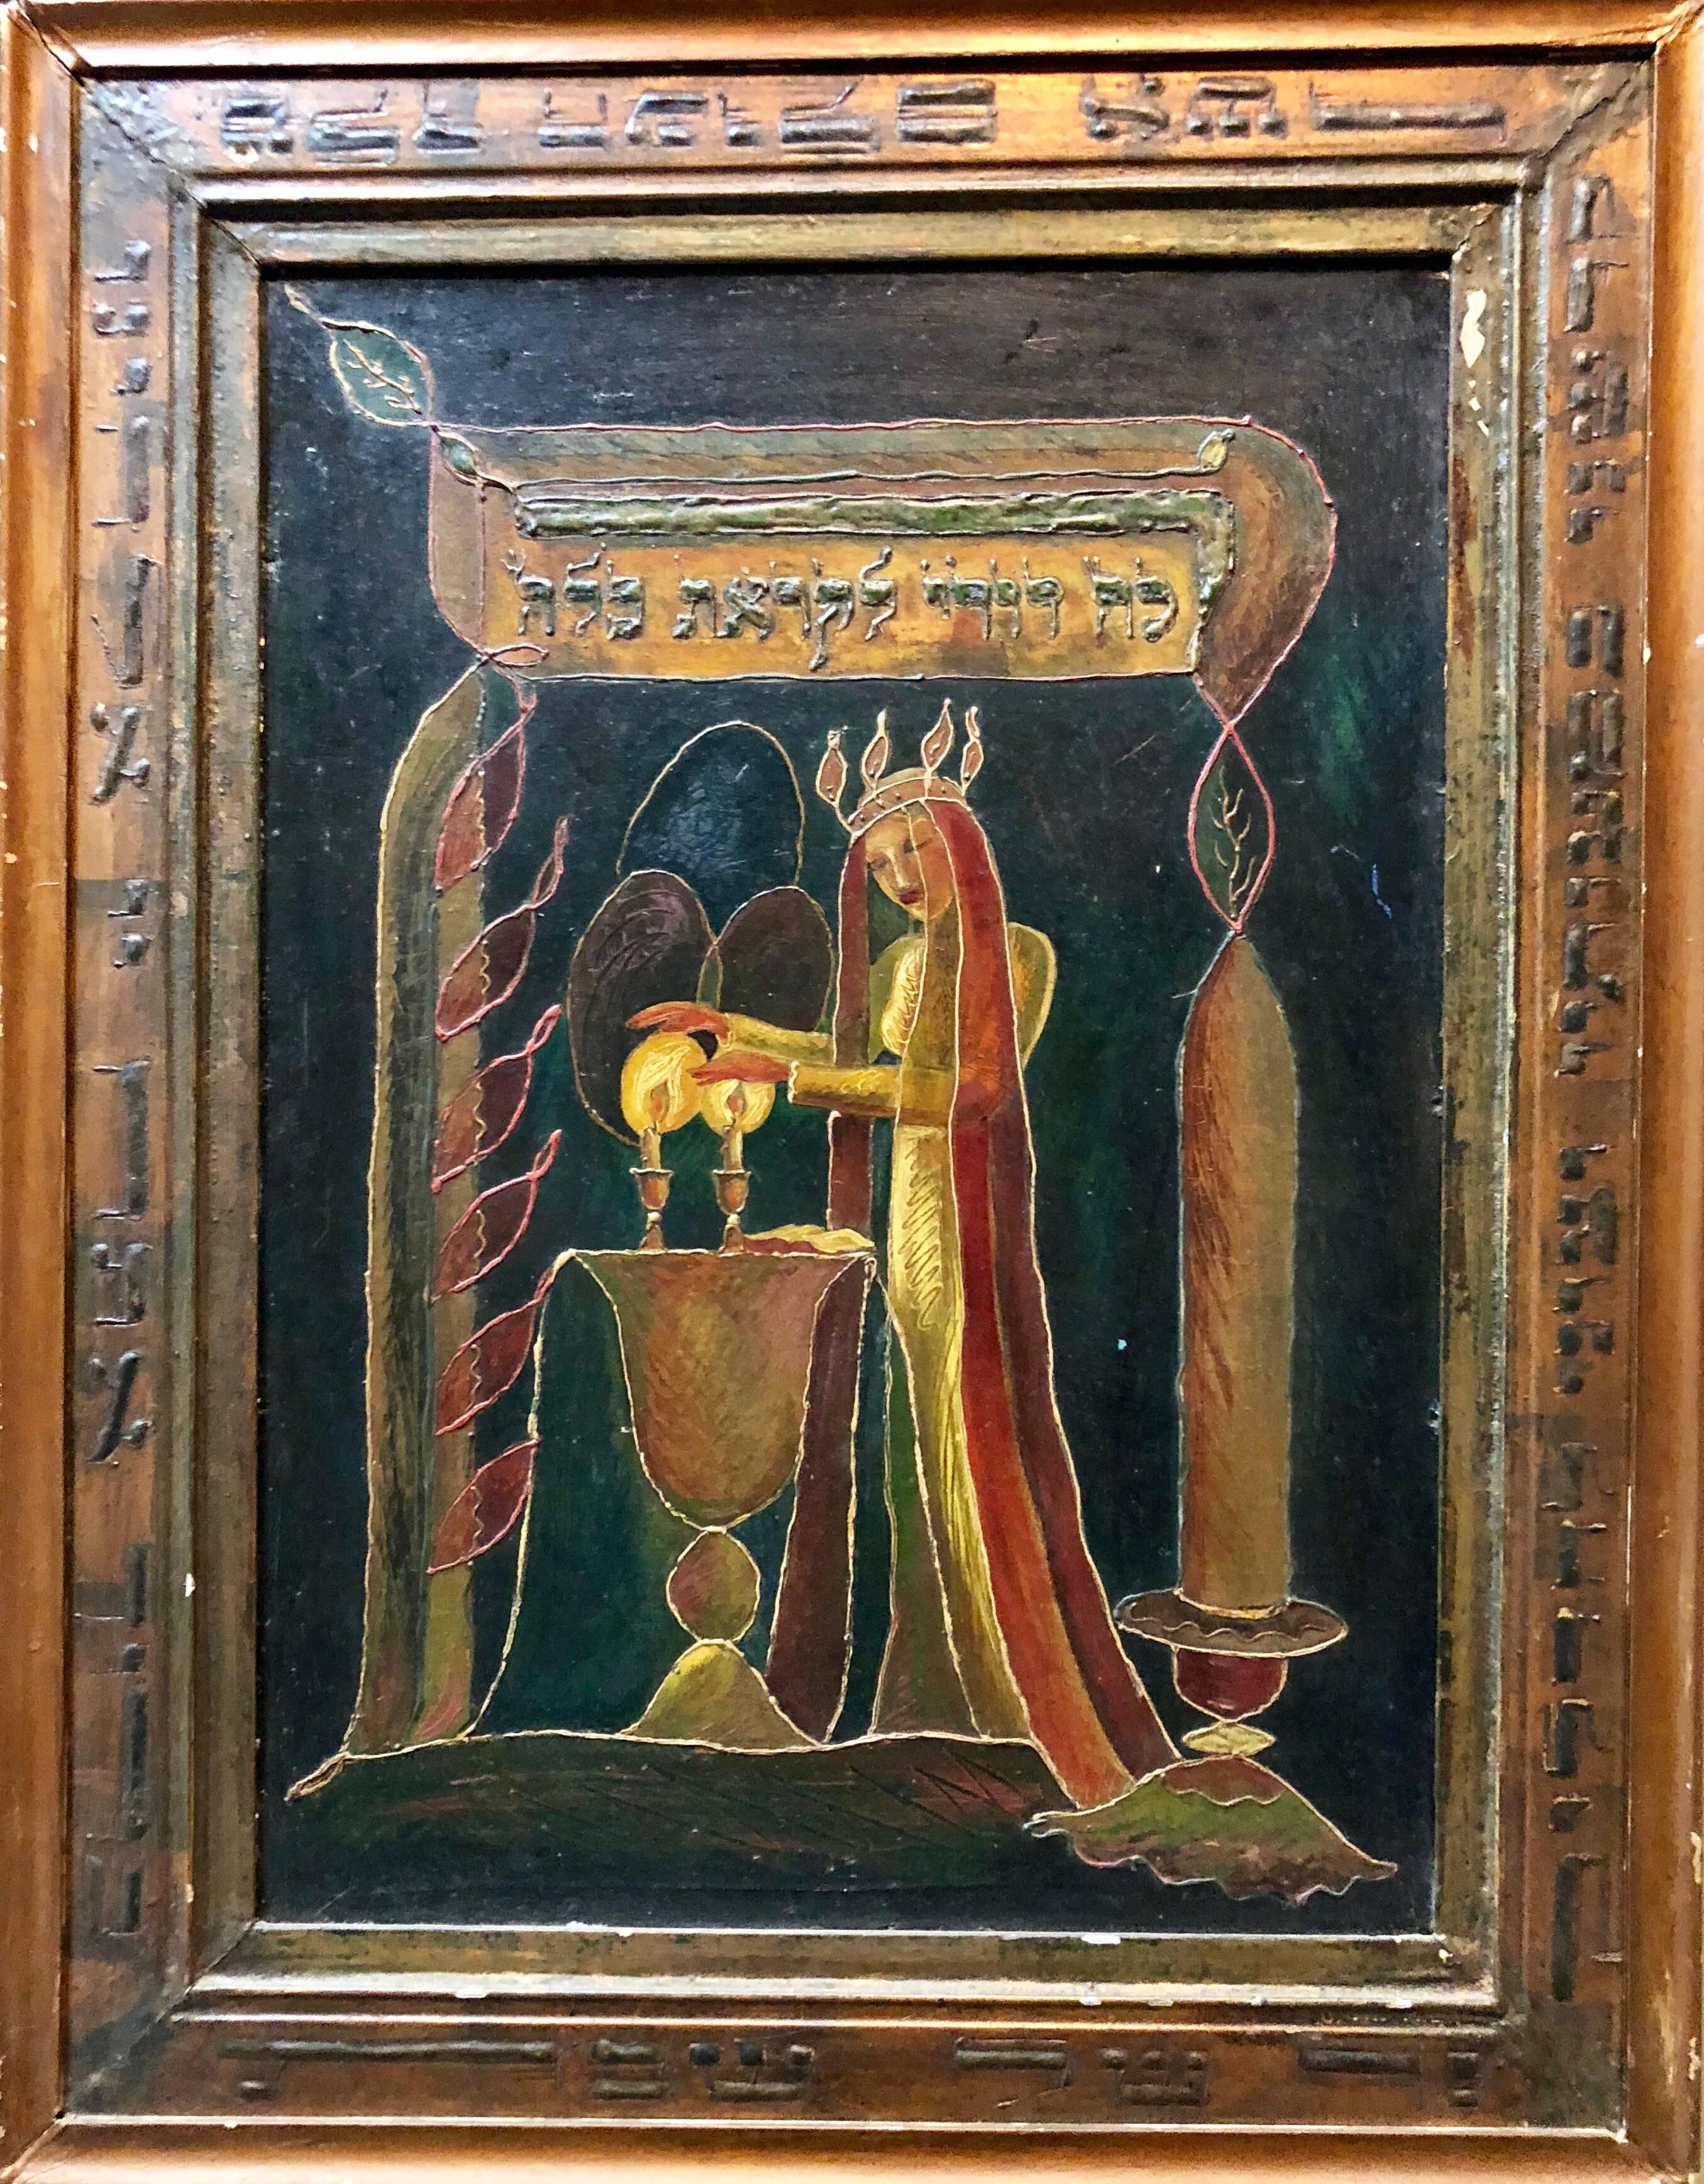 Modernistisches skulpturales Judaica-Gemälde SHABBAT CANDLES in Mischtechnik – Mixed Media Art von Alexander Raymond Katz